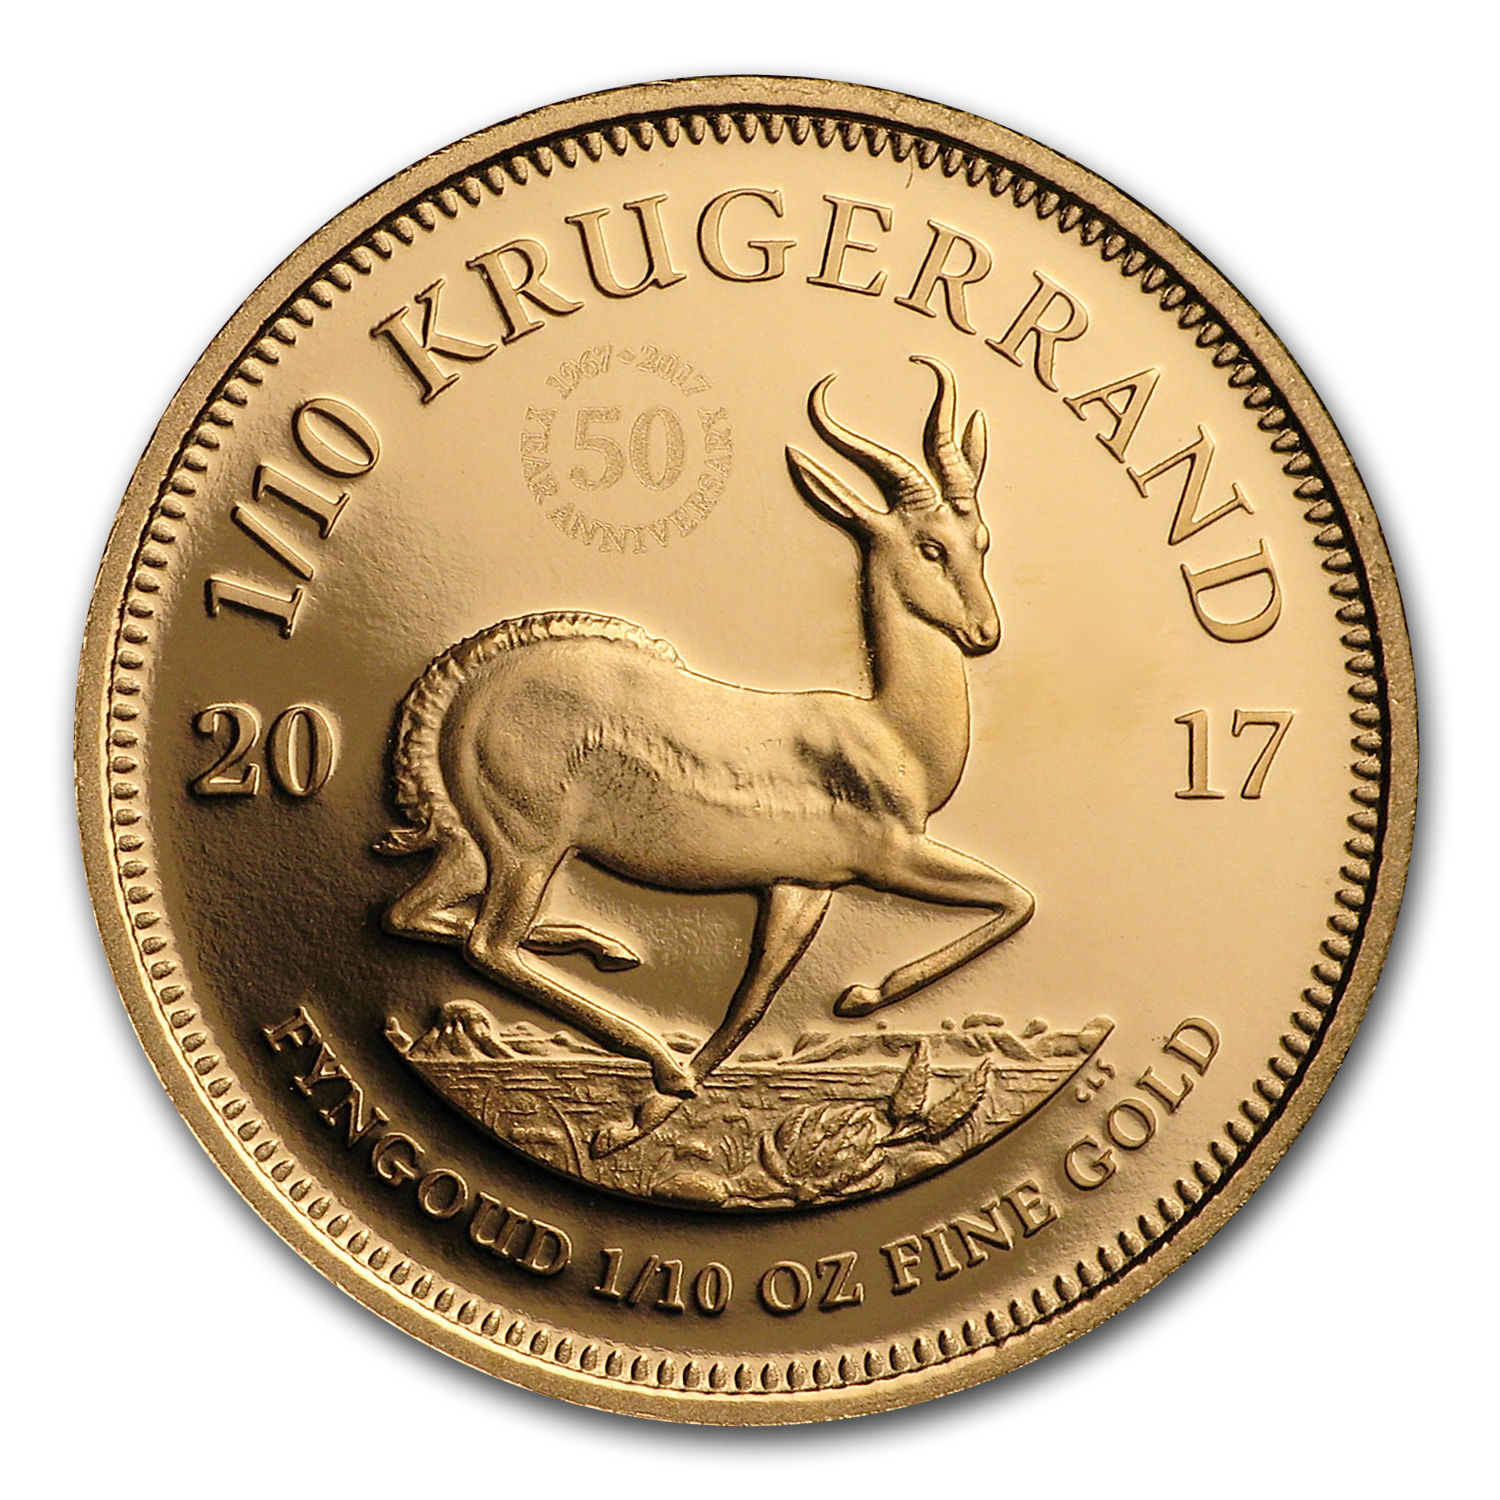 2017 South Africa 1/10 oz Proof Gold Krugerrand - SKU #114873